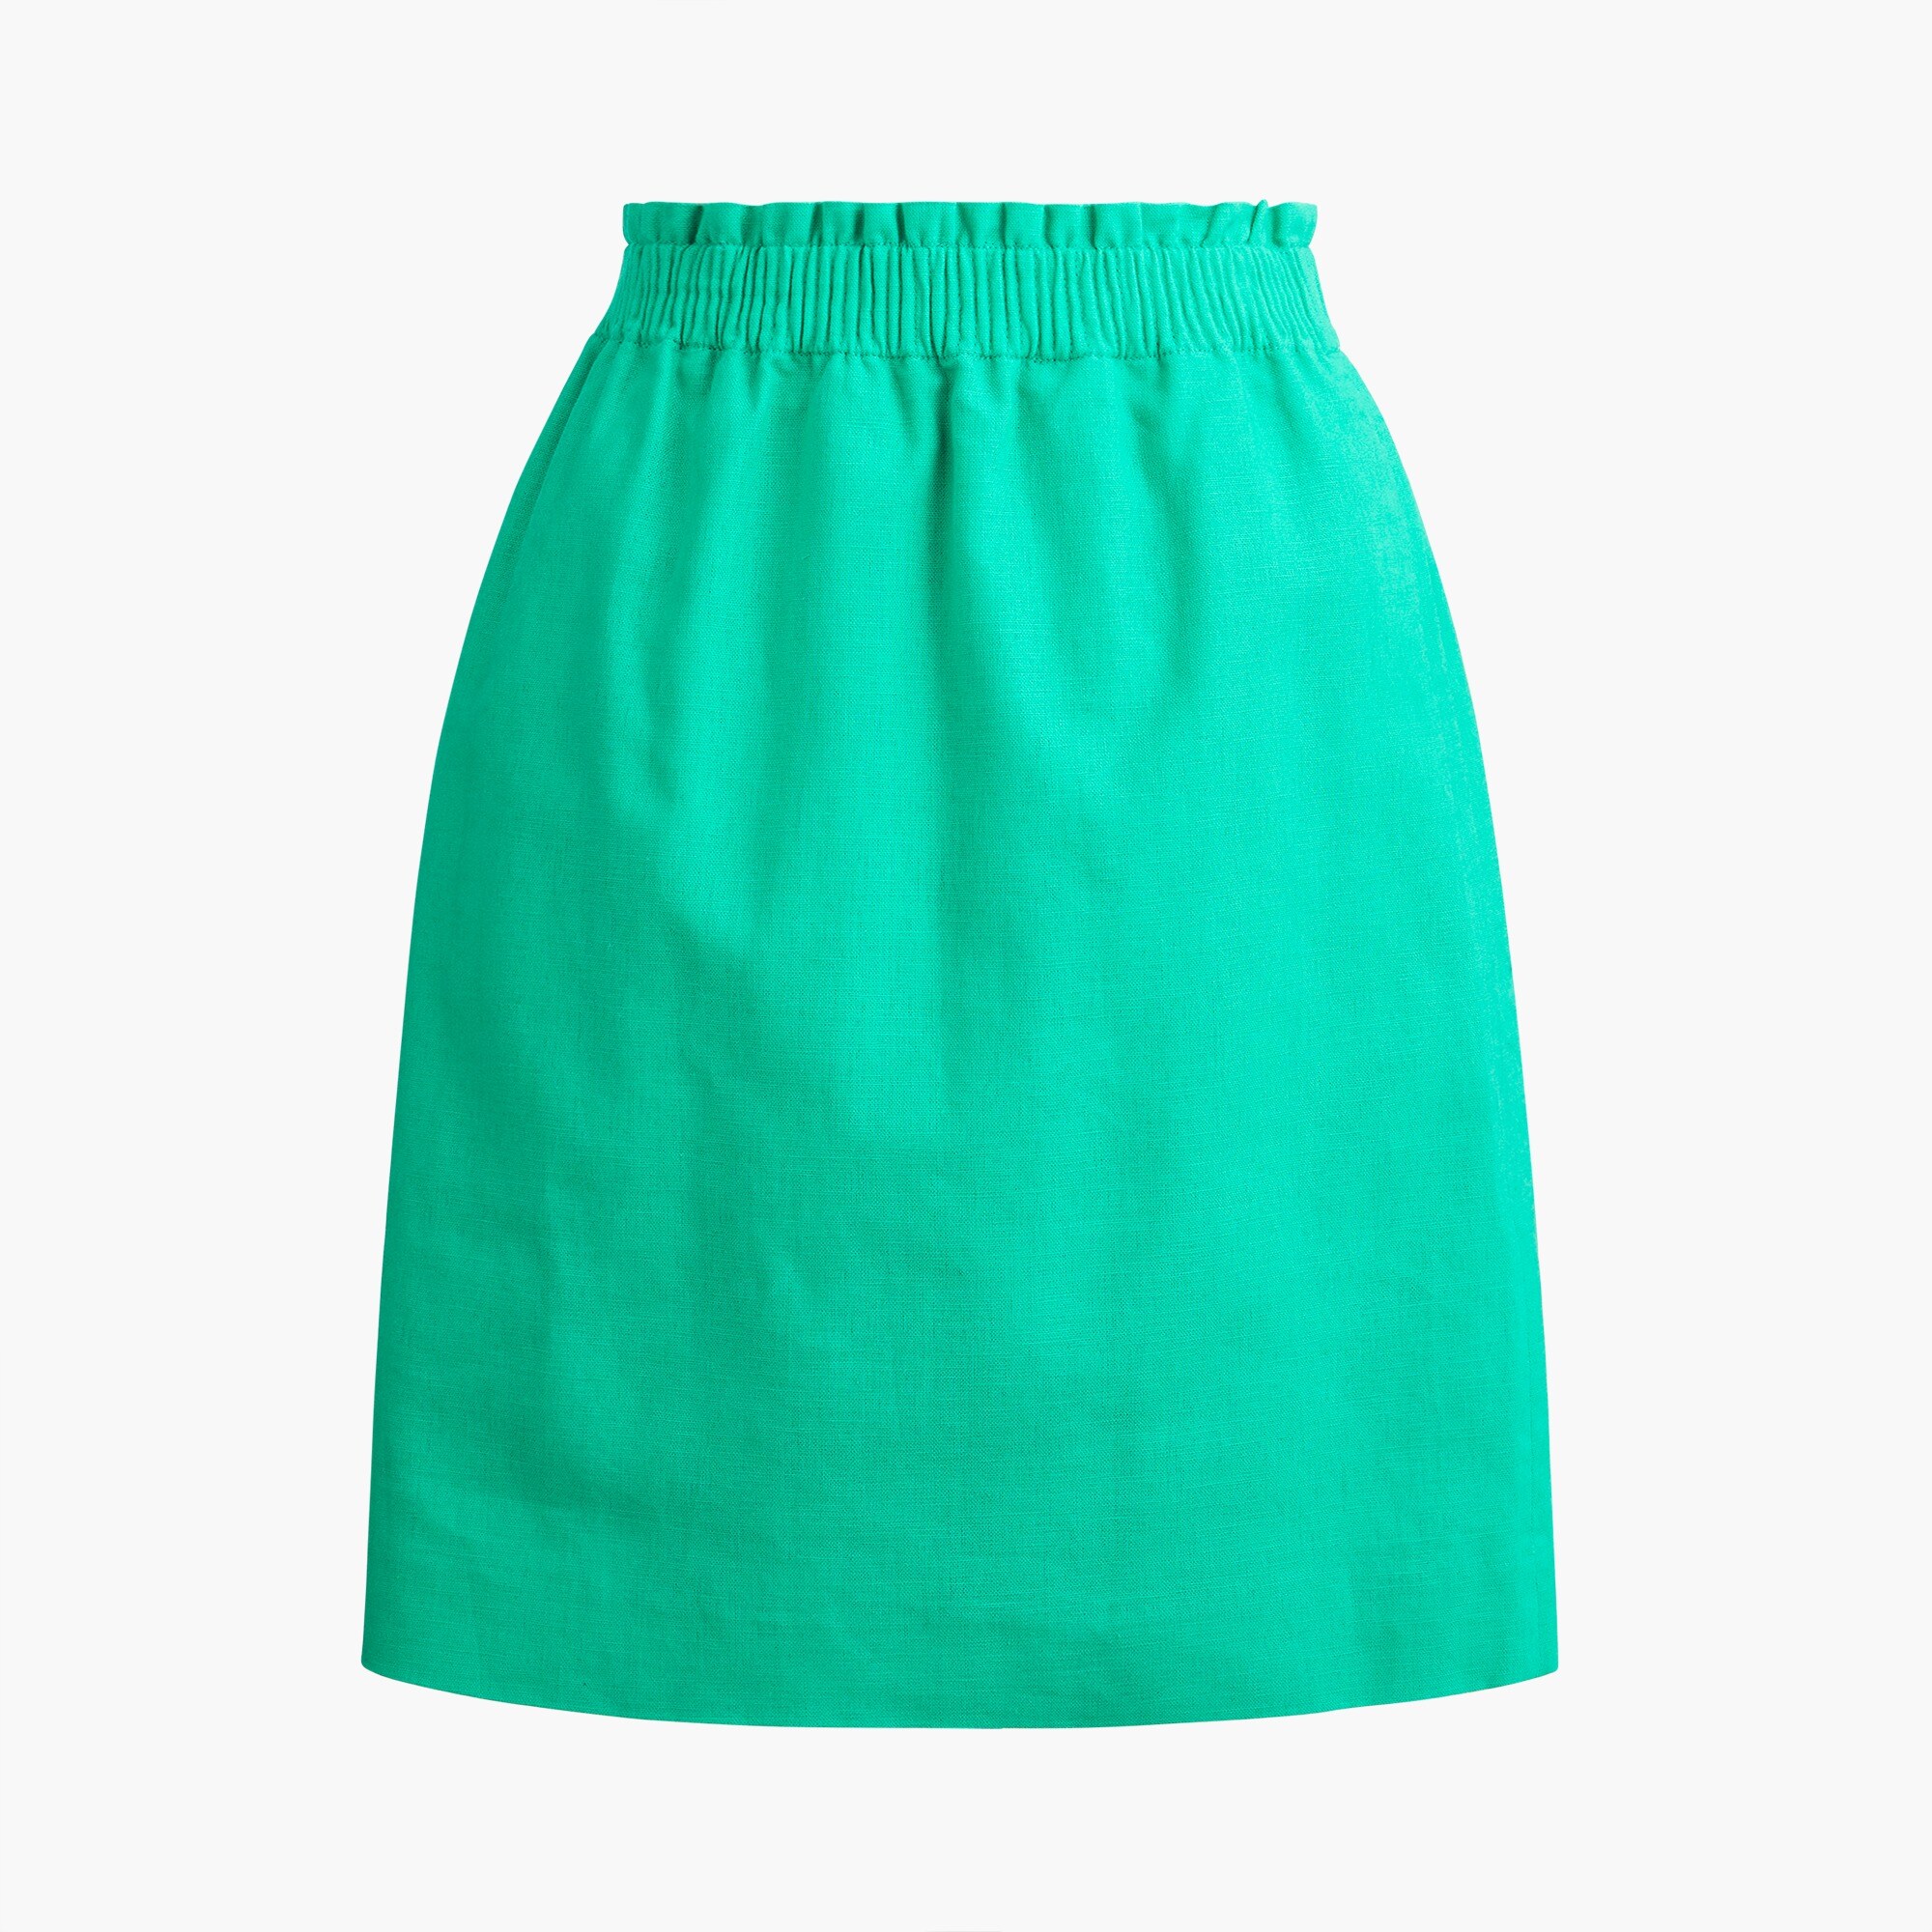  Linen-cotton blend city skirt